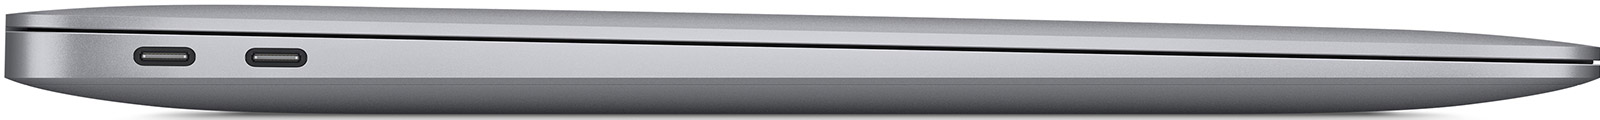 Apple-MacBook-Air-13-3-M1-8-Core-16-GB-256-GB-7-Core-Grafik-Space-Grau-CH-05.jpg